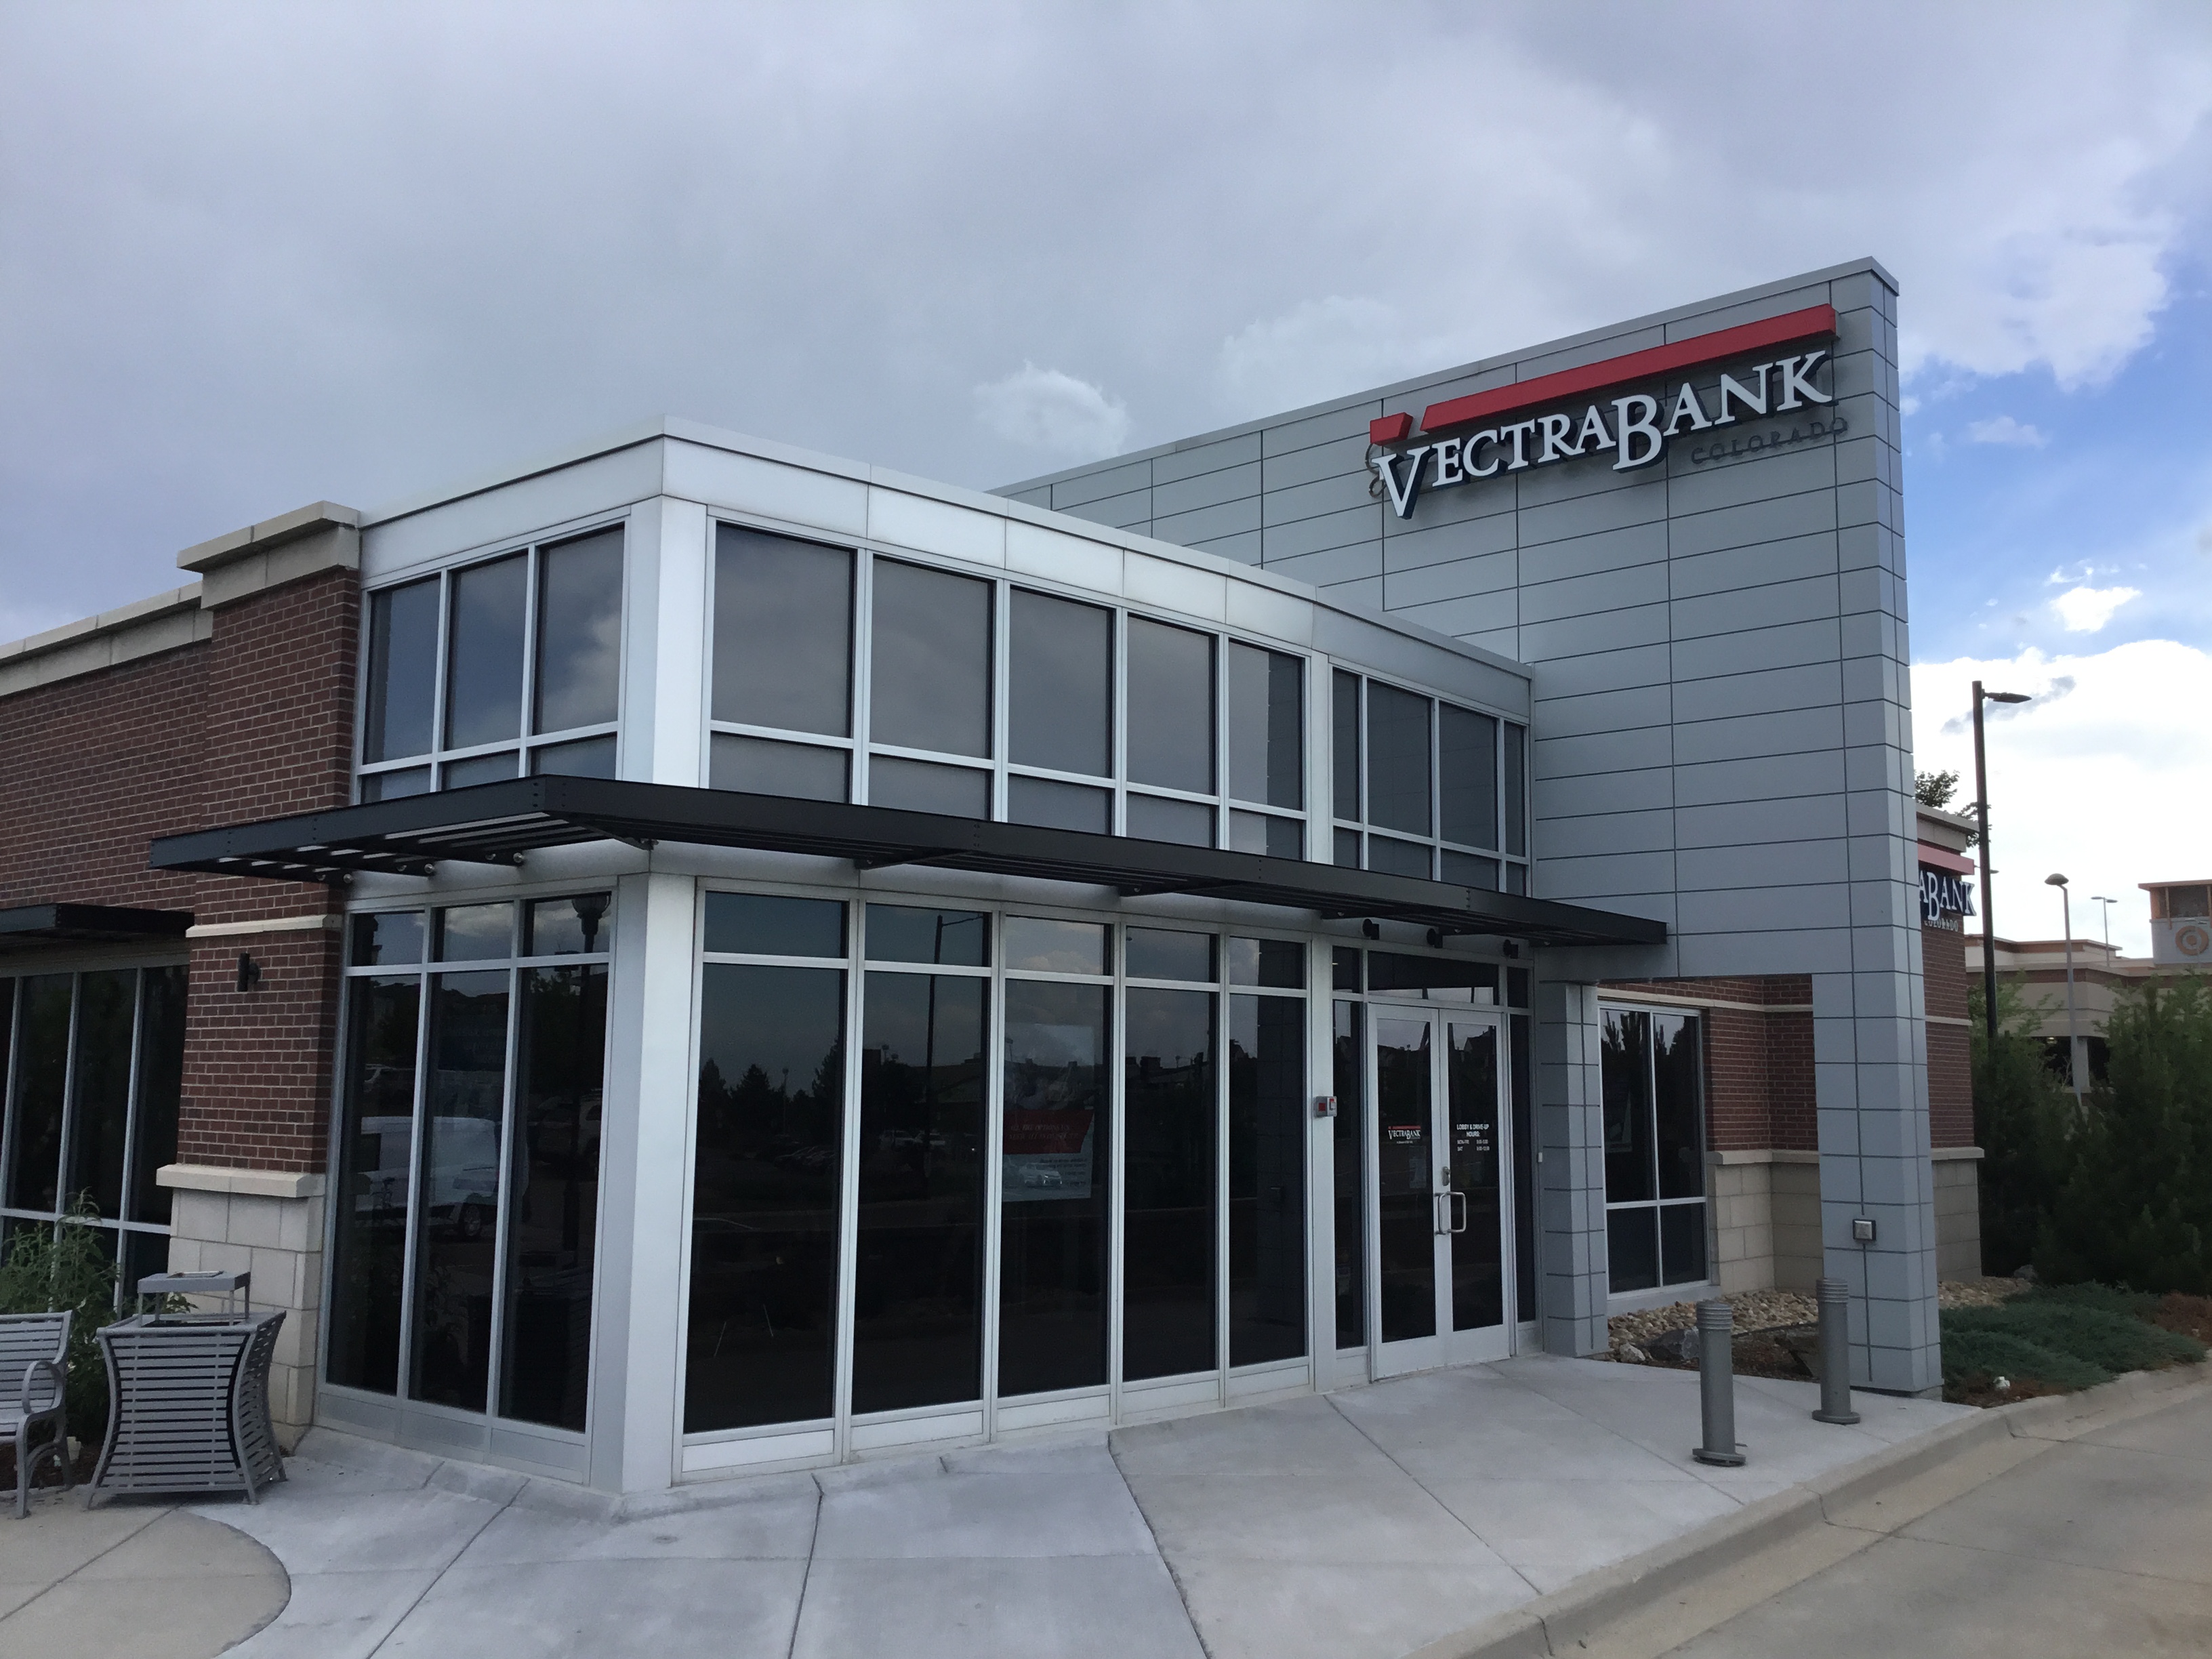 Vectra Bank Photo